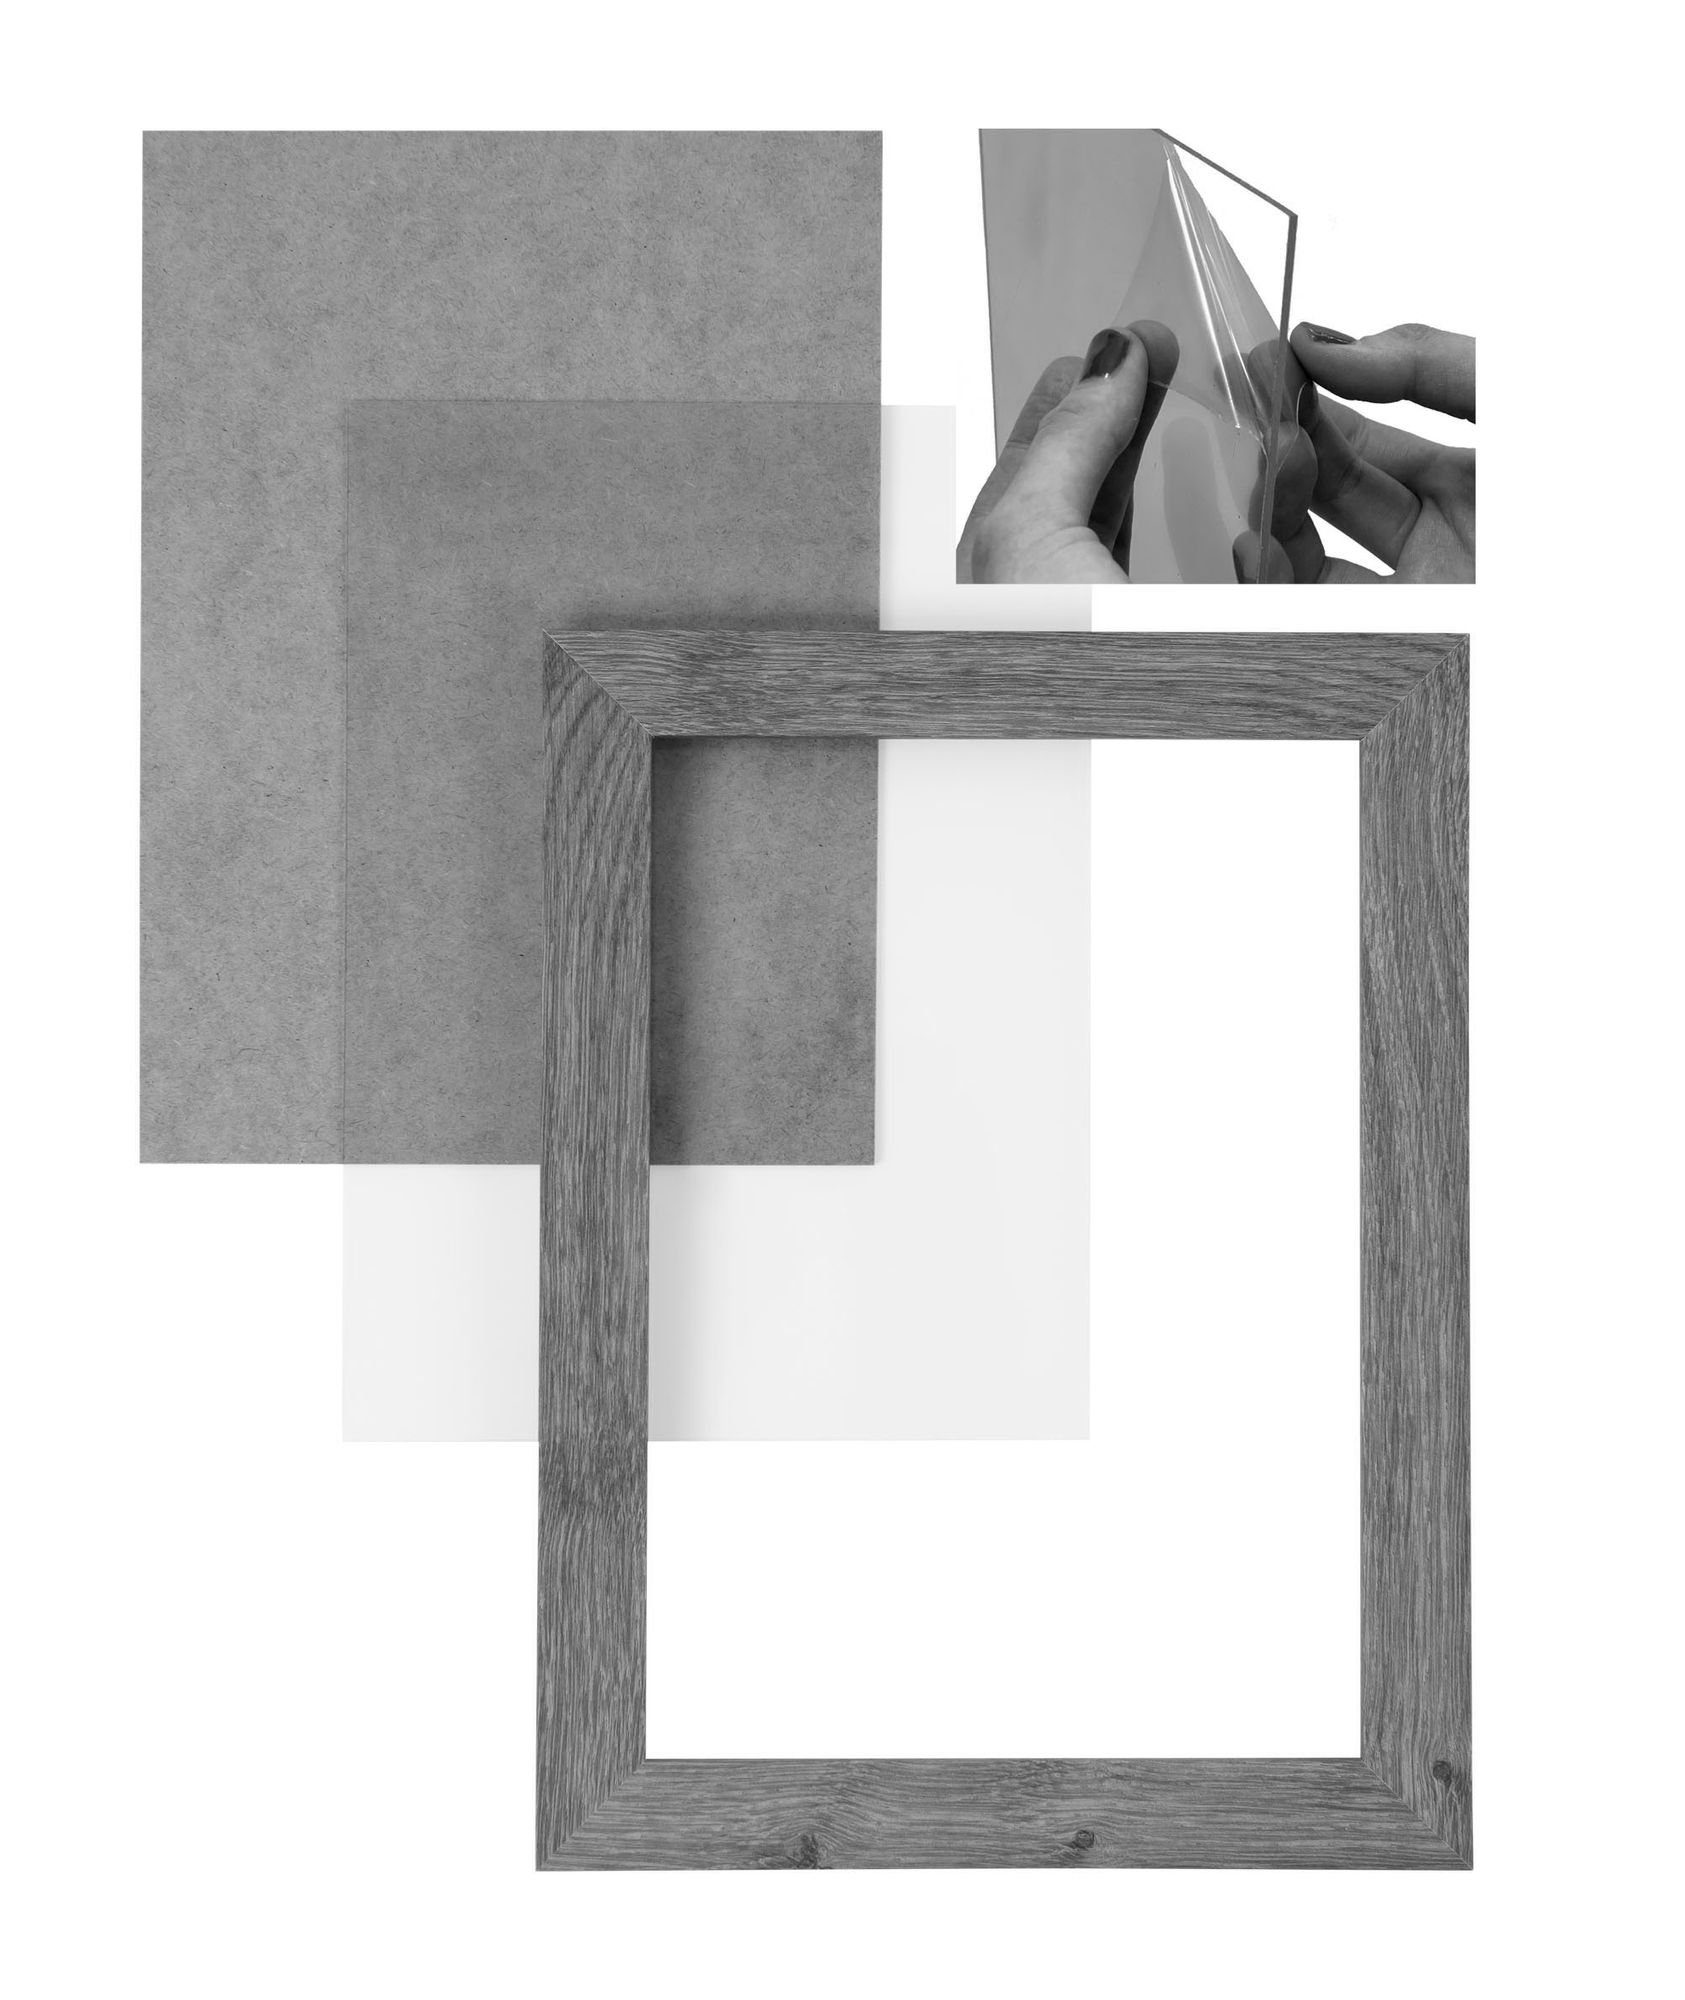 CLAMARO Rückwand Bilderrahmen eckiger Clamaro Aufhänger und handgefertigt 30x55 in Acrylglas, Moderner MDF Bilderrahmen nach 'Collage' Holz vintage Rahmen FSC® weiss Maß inkl.